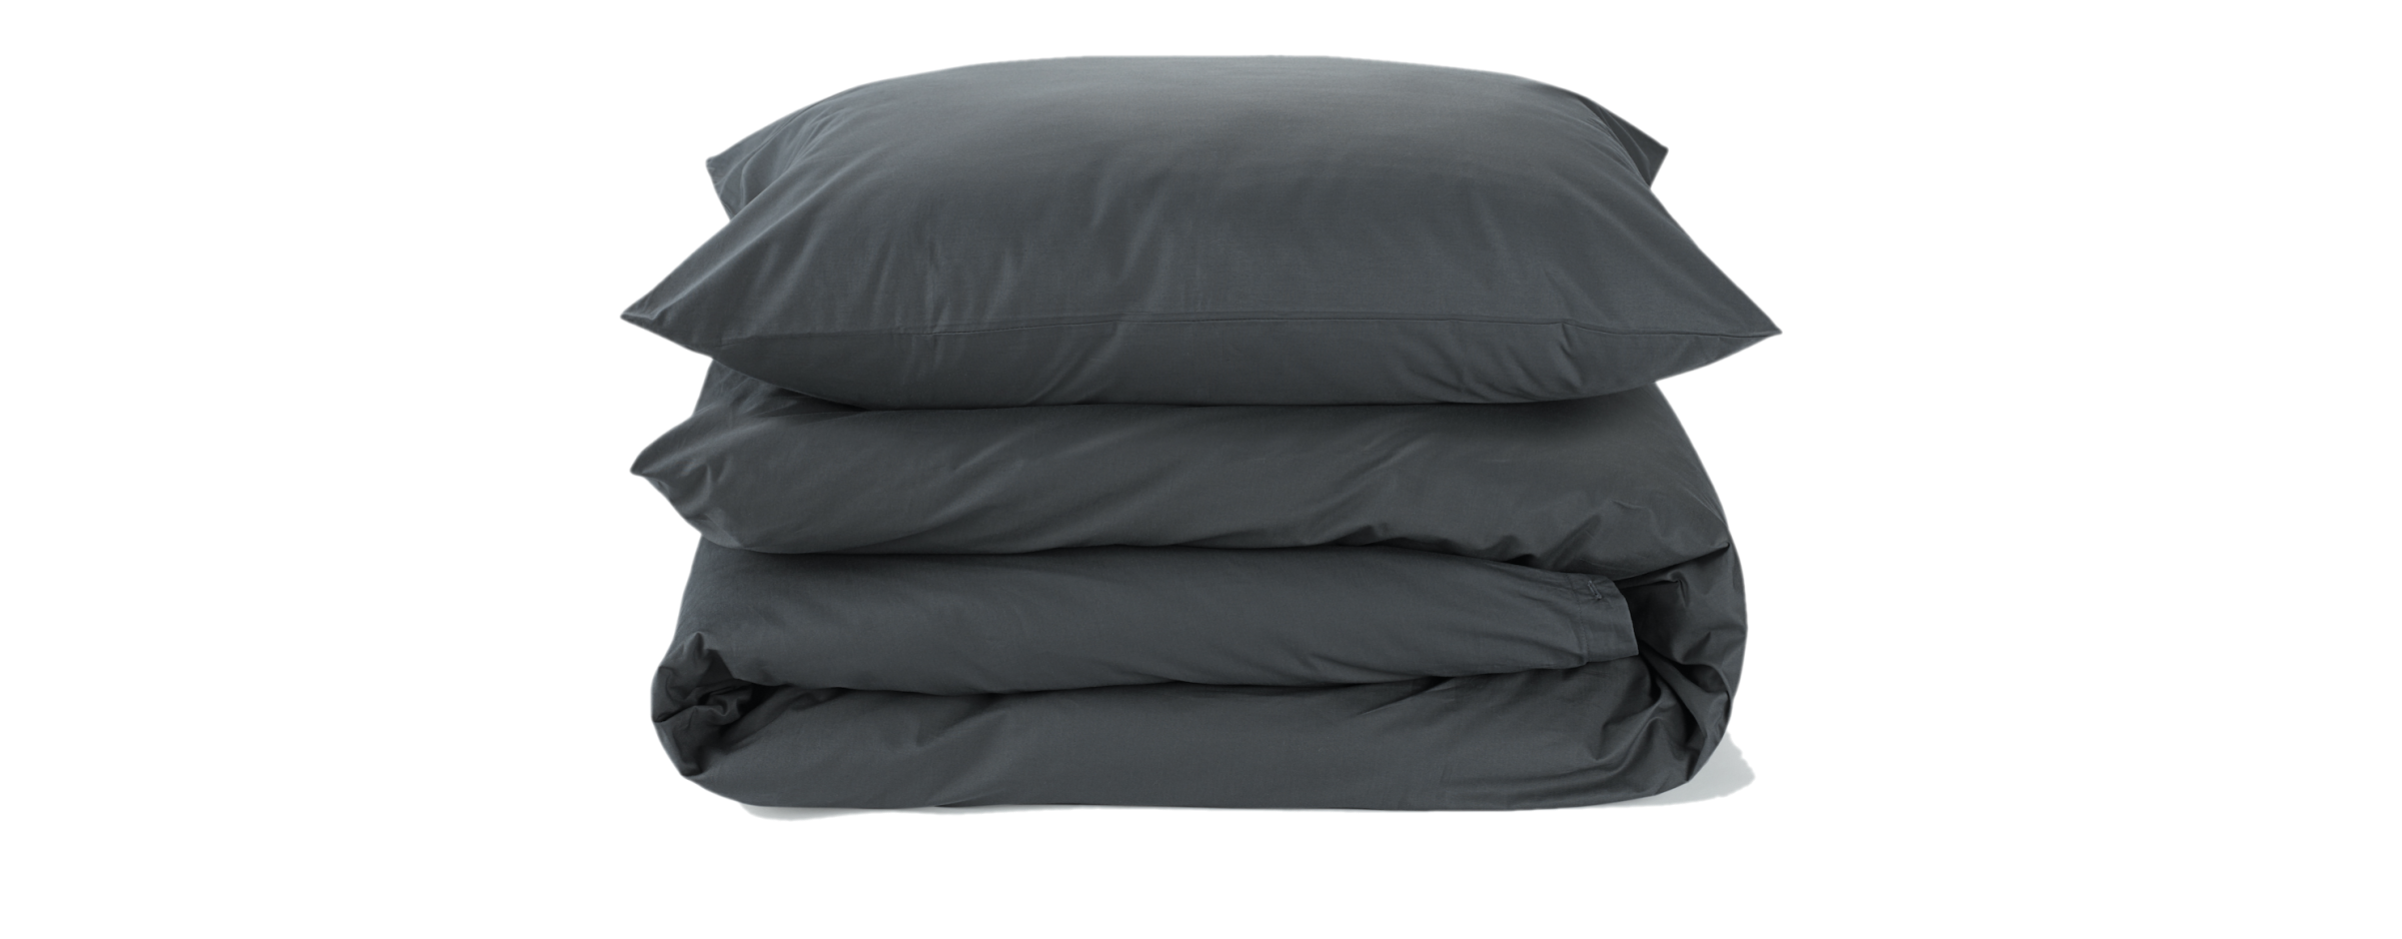 move-in bedding set in dark grey